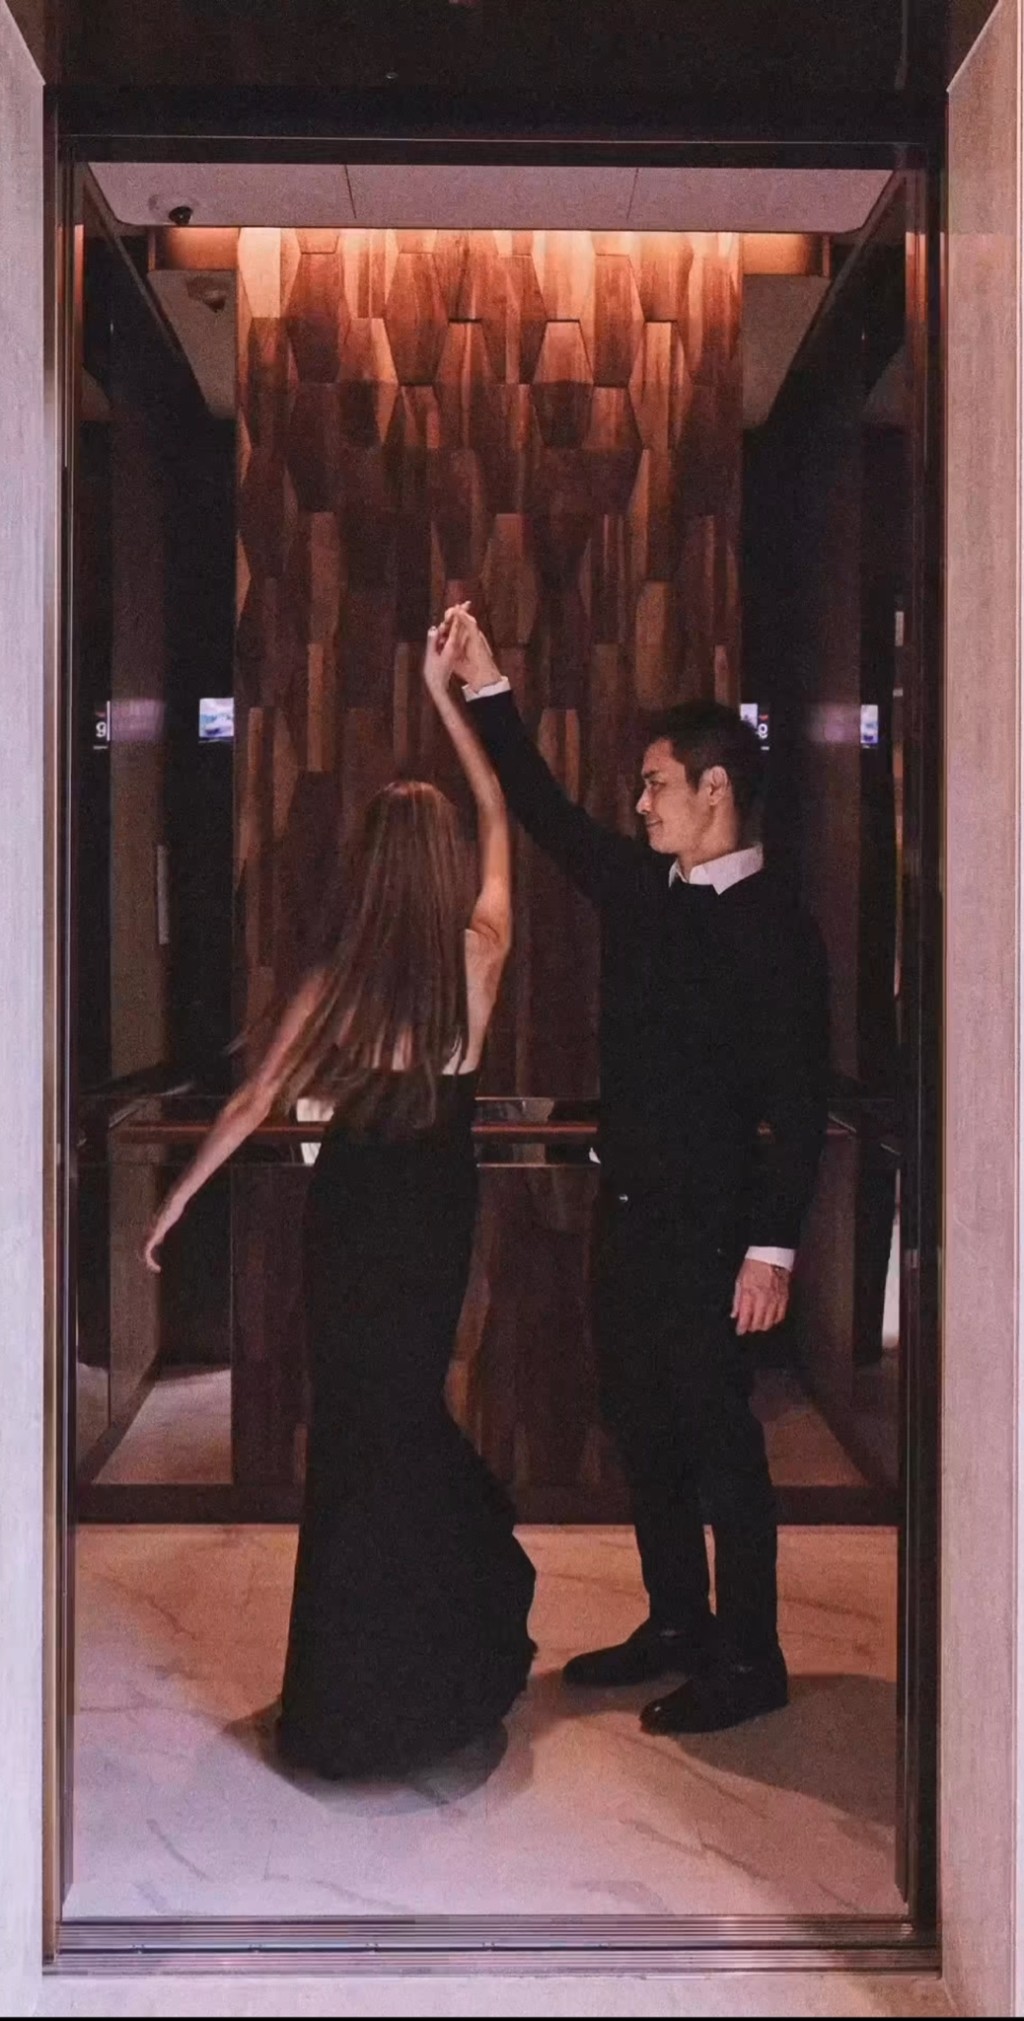 内容是二人在电梯中如跳舞般。